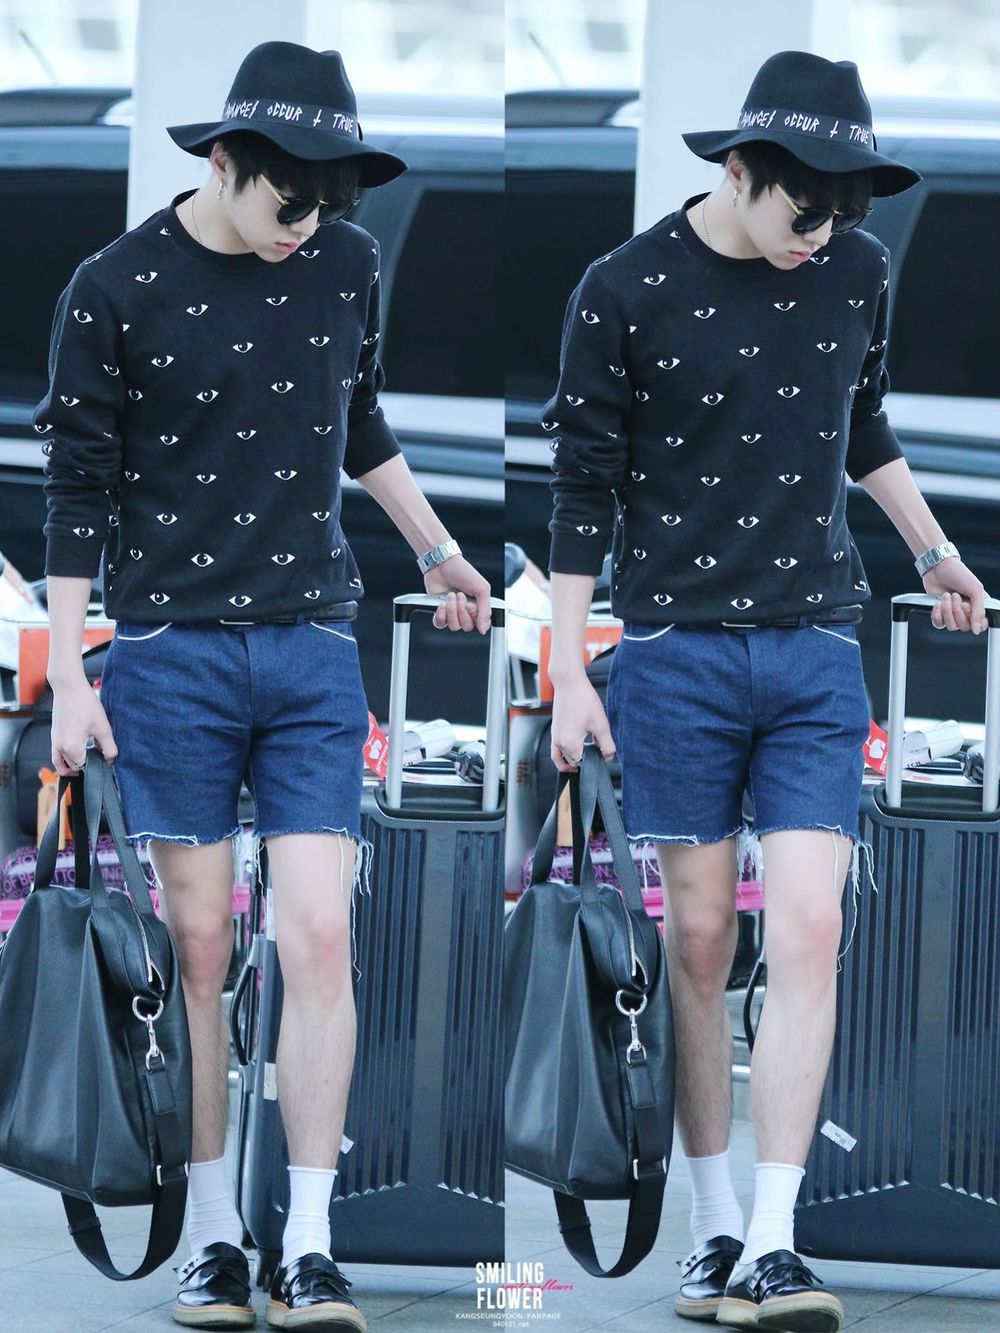  
Phải chăng vì biết mình có đôi chân đẹp nên Seungyoon mới hay mặc quần ngắn như thế! (Ảnh: Twitter)